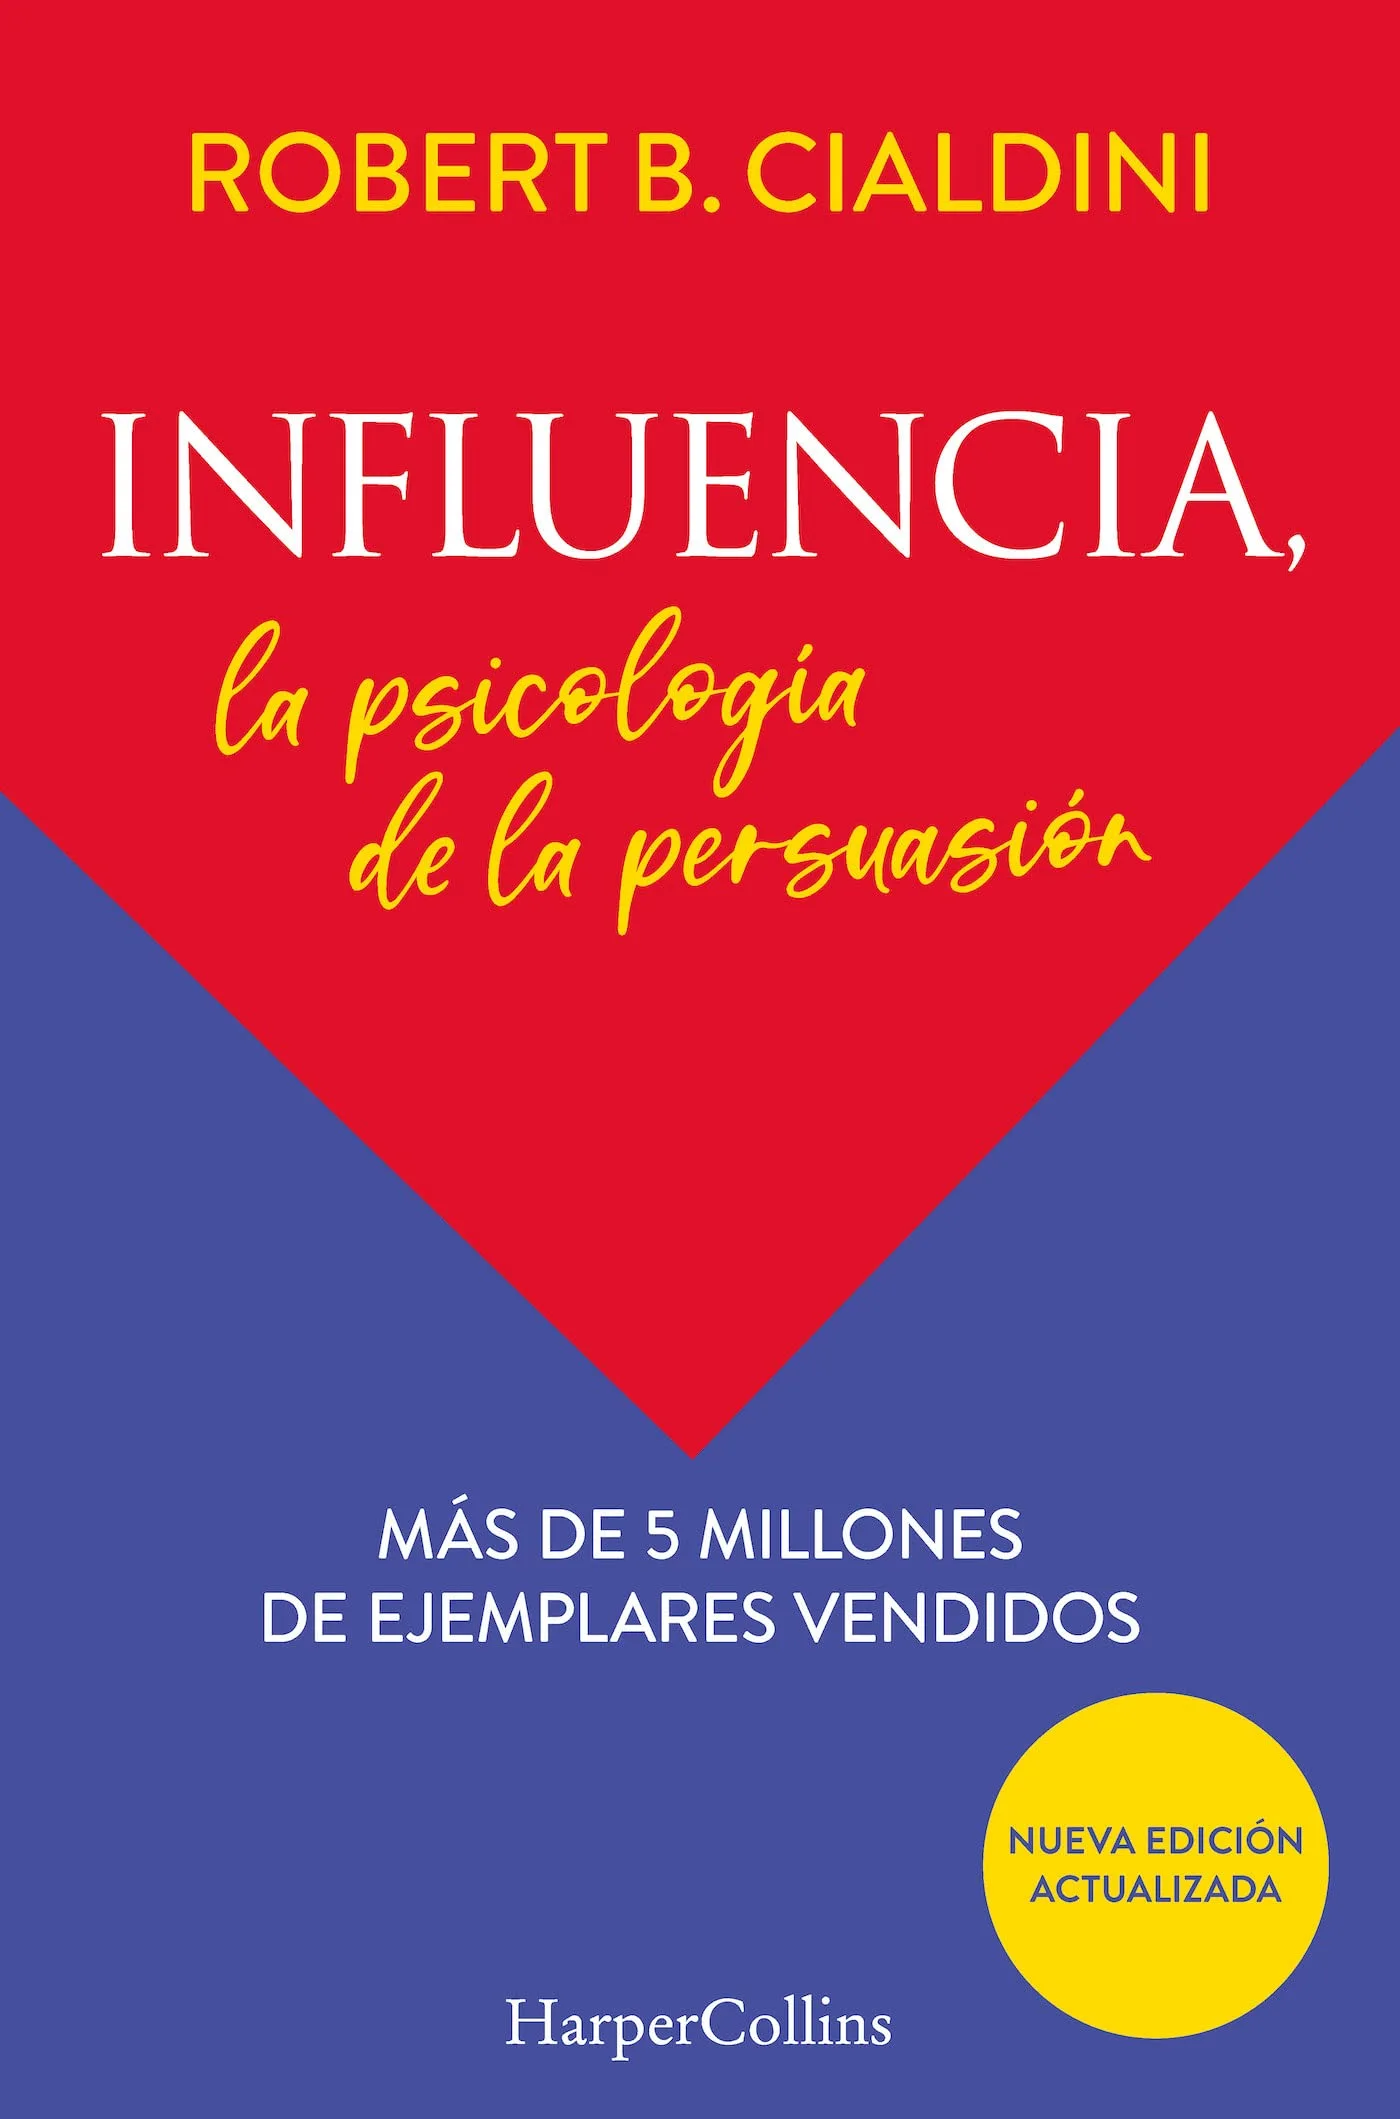 Carátula del libro "Influencia: La psicología de la persuasión"